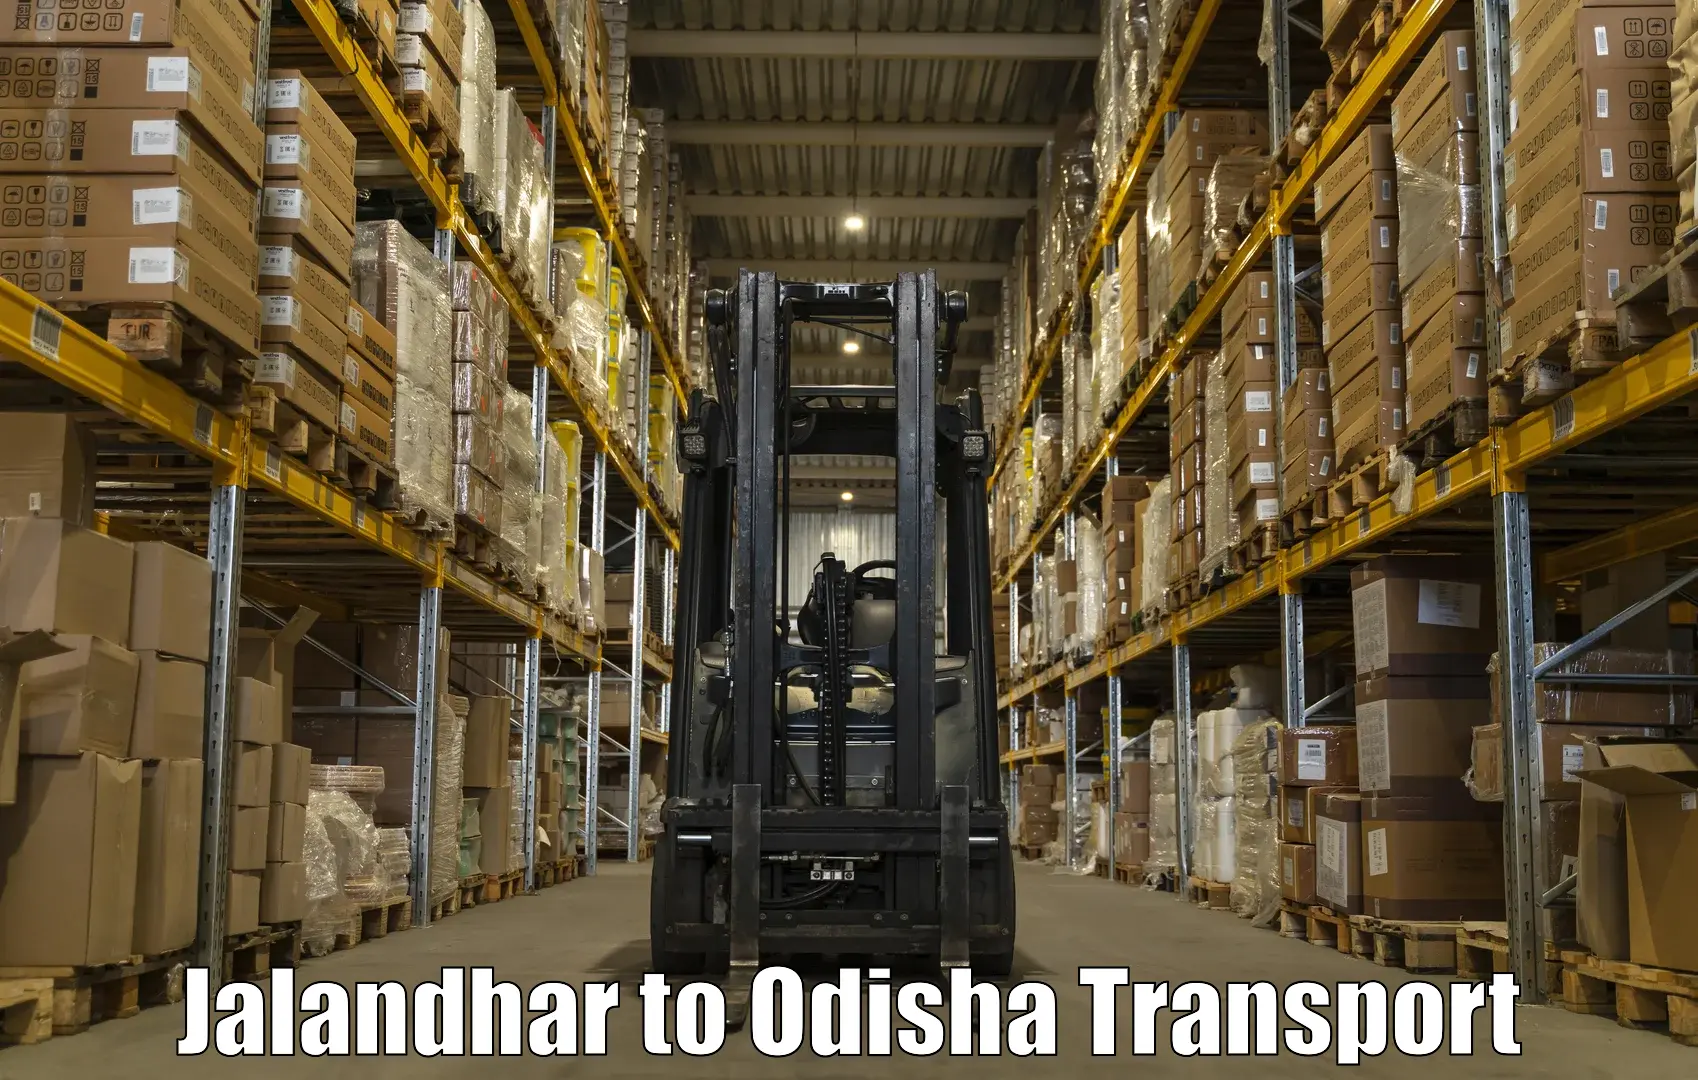 Daily transport service Jalandhar to Baripada